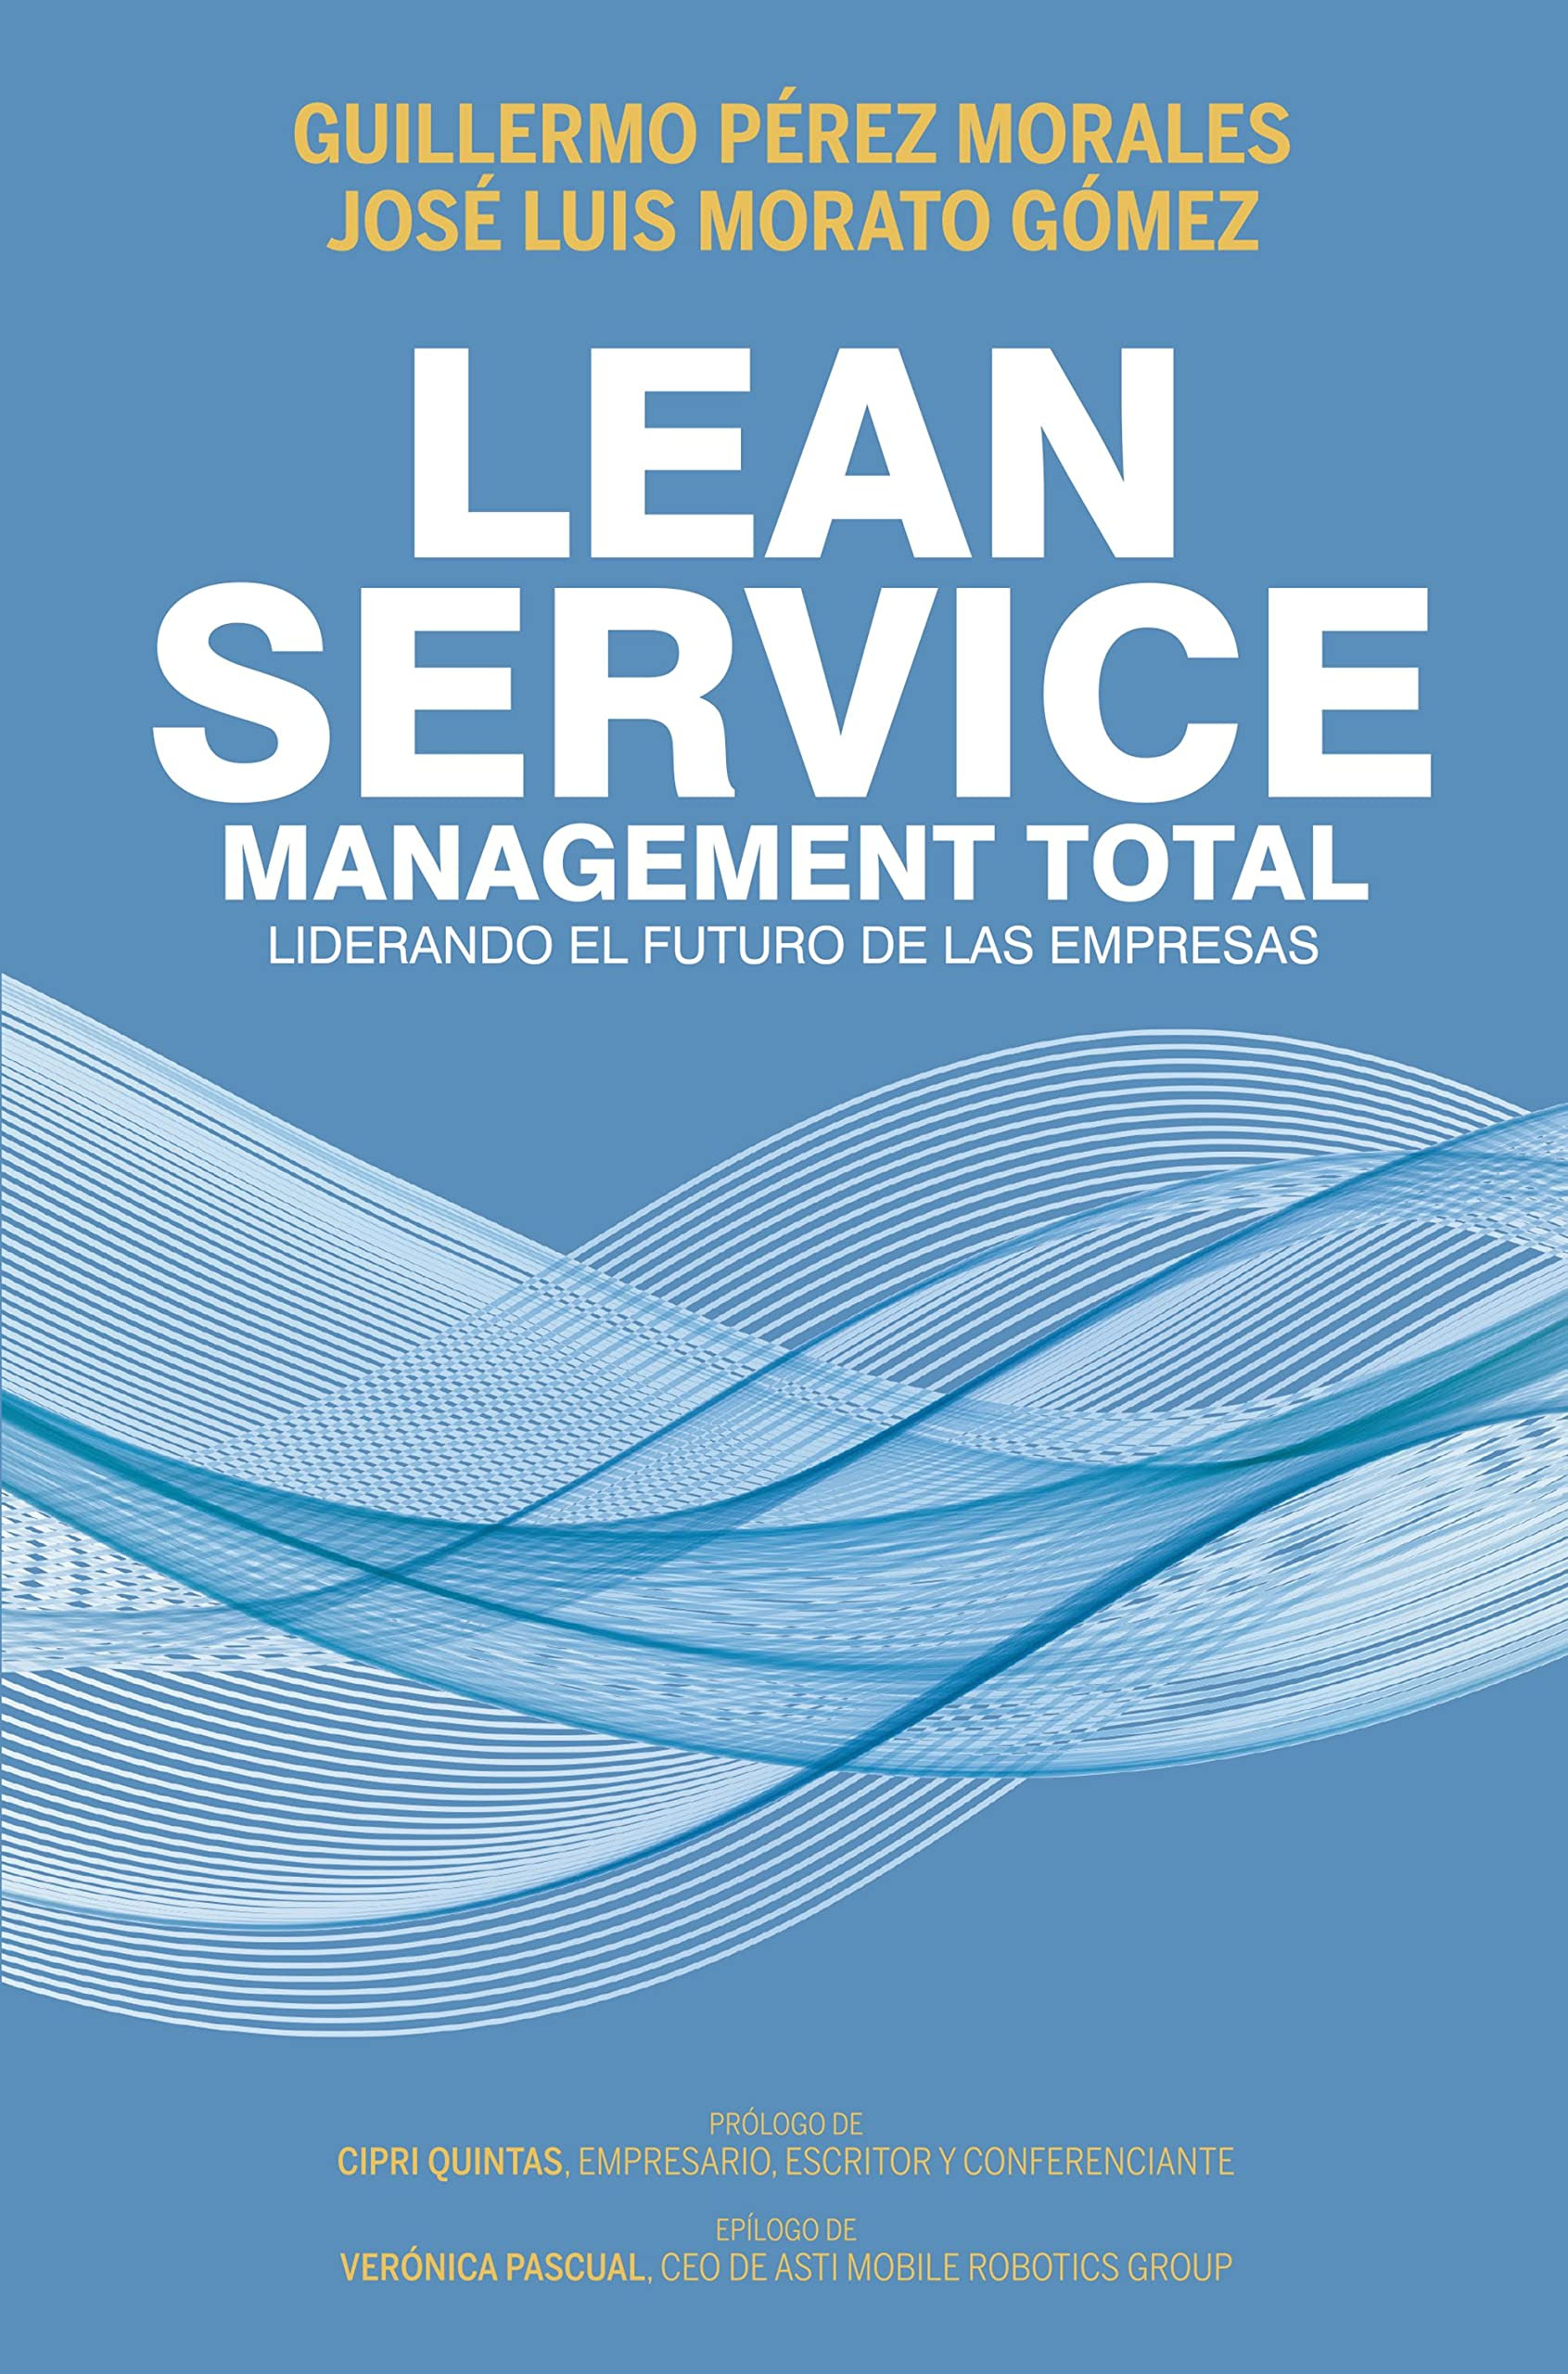 Lean Service, management total : Liderando el futuro de las empresas. EPUB